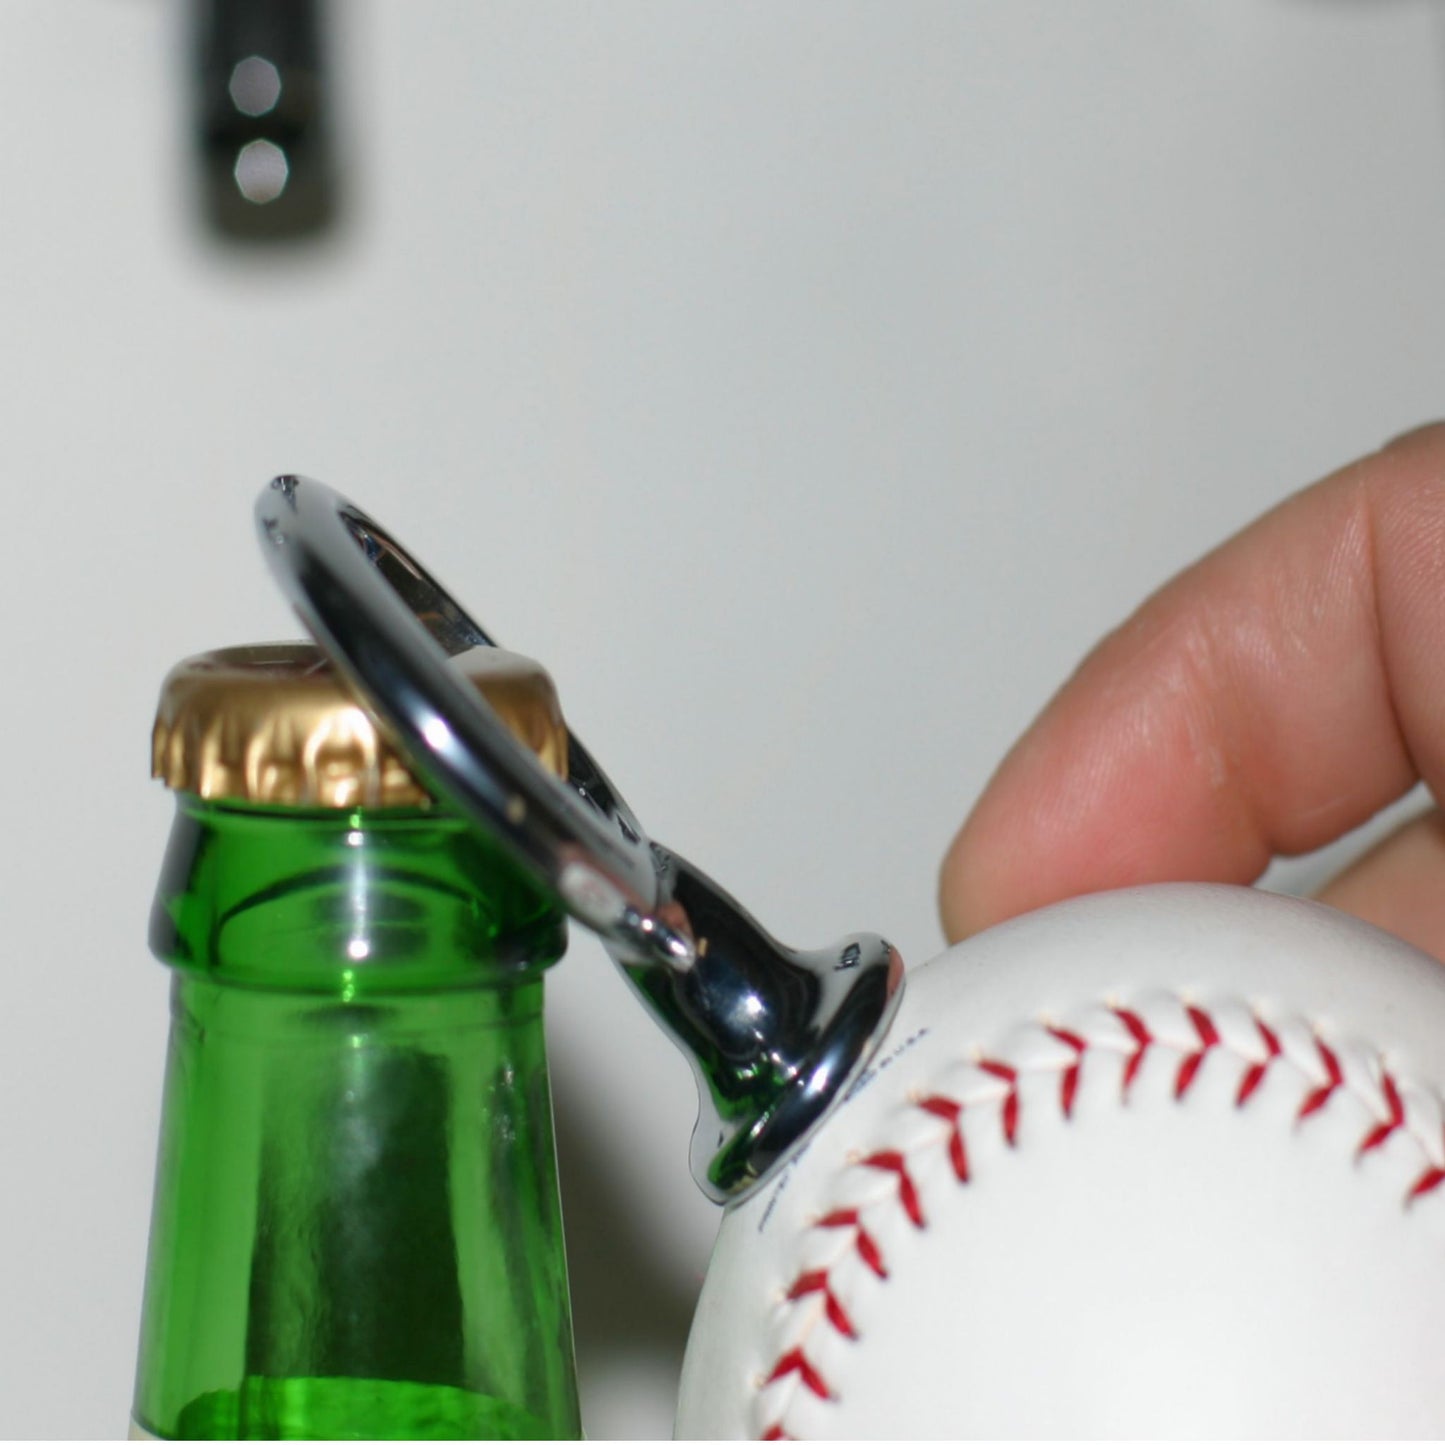 Kansas City Royals Licensed Baseball Fulcrum Series Bottle Opener